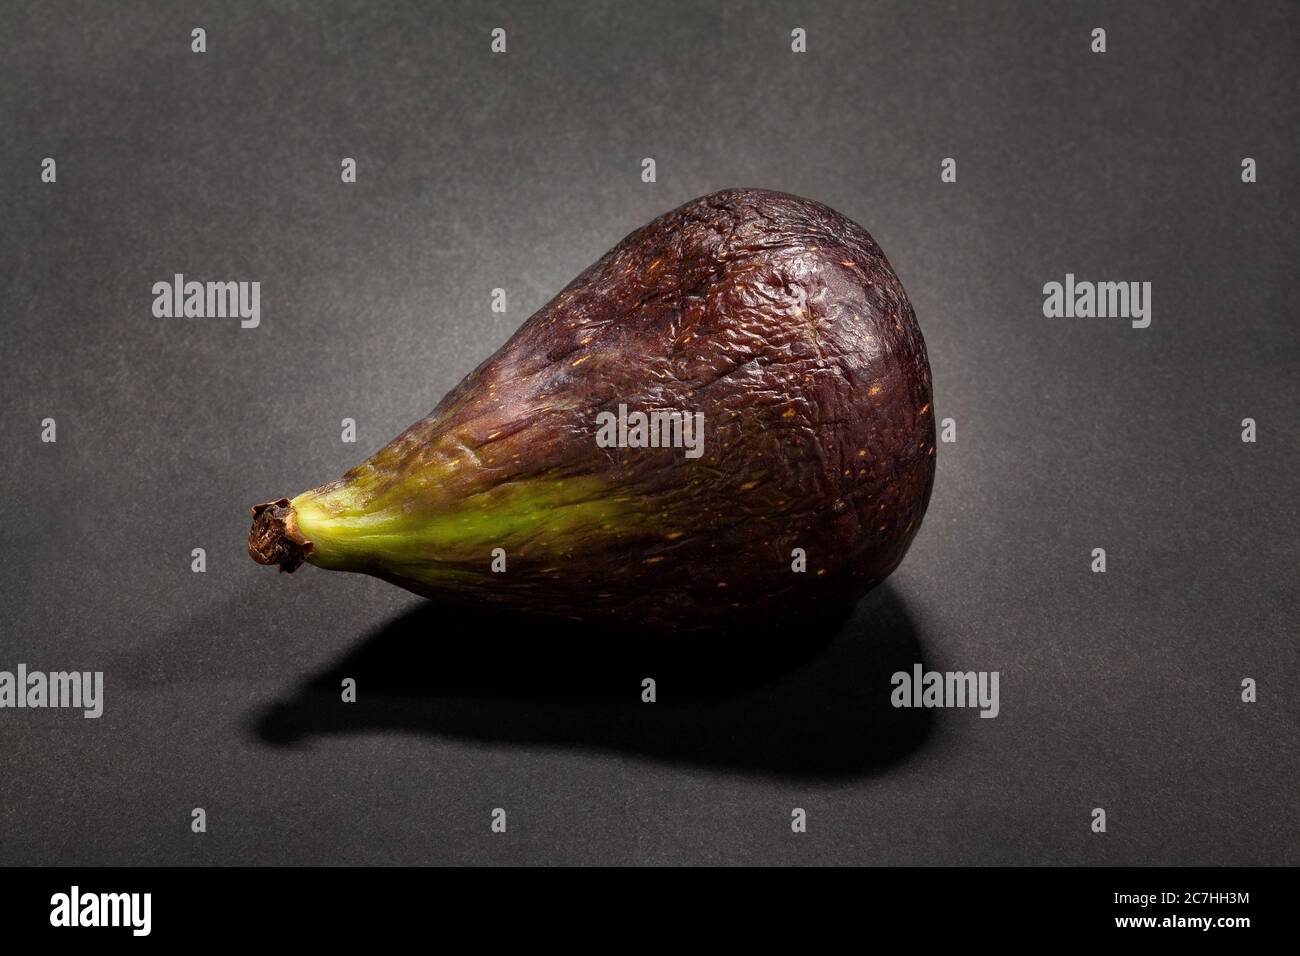 single fig on black background Stock Photo